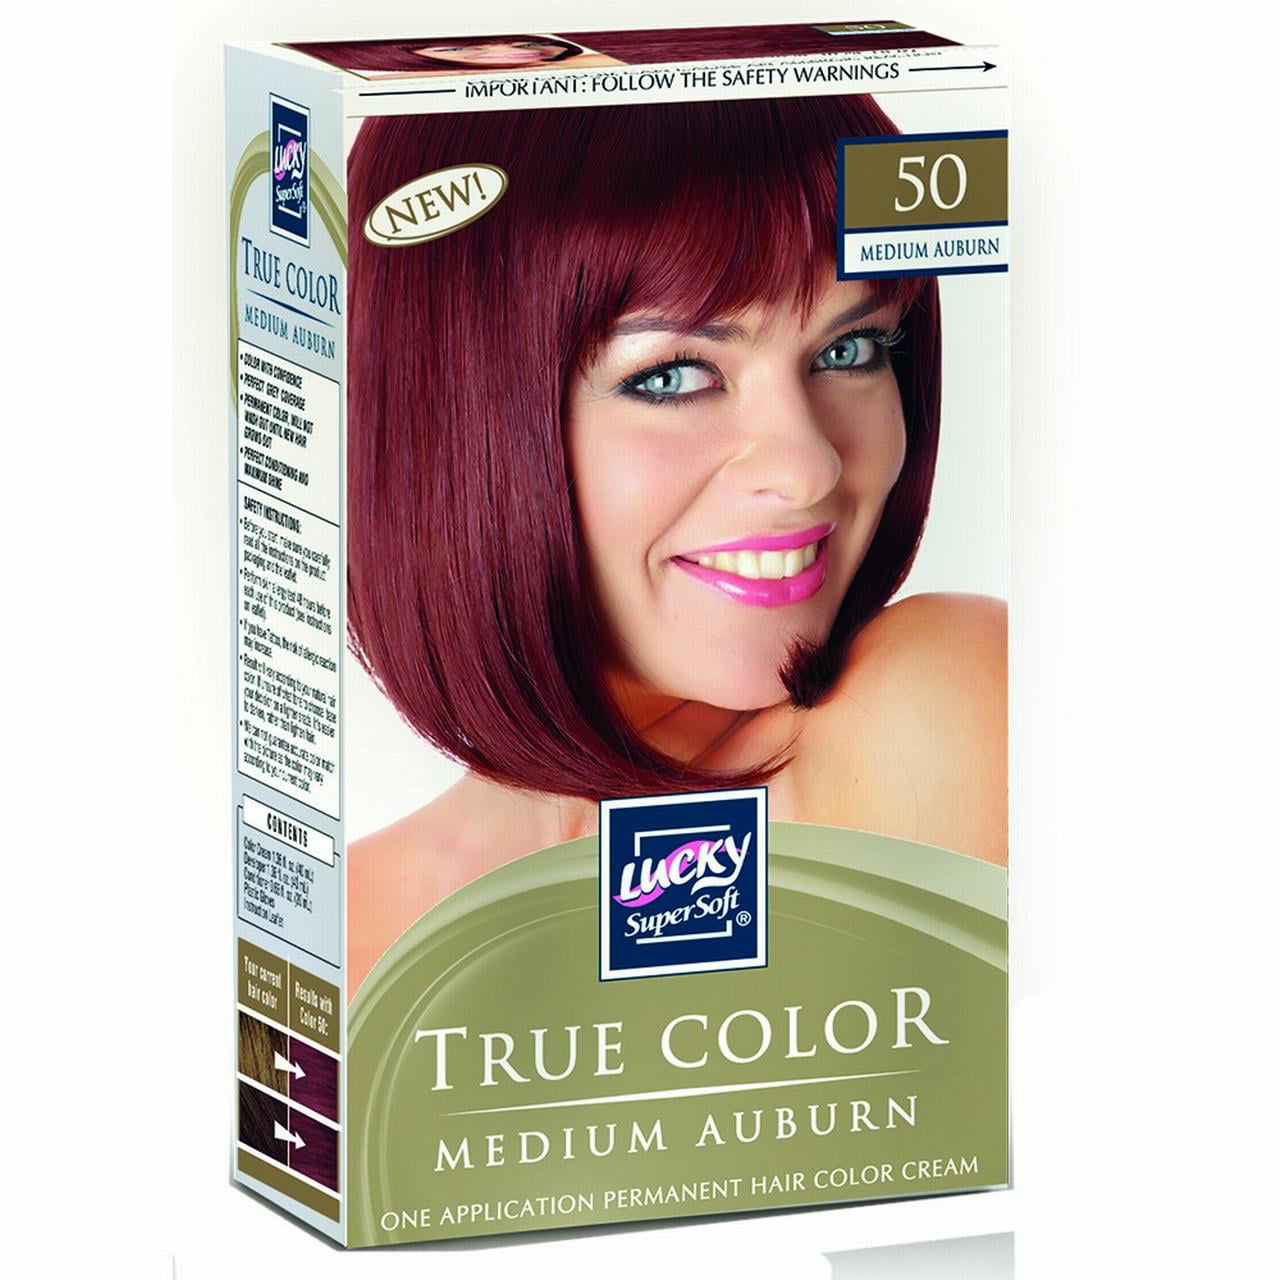 Lucky Super Soft Hair Color, Medium Auburn